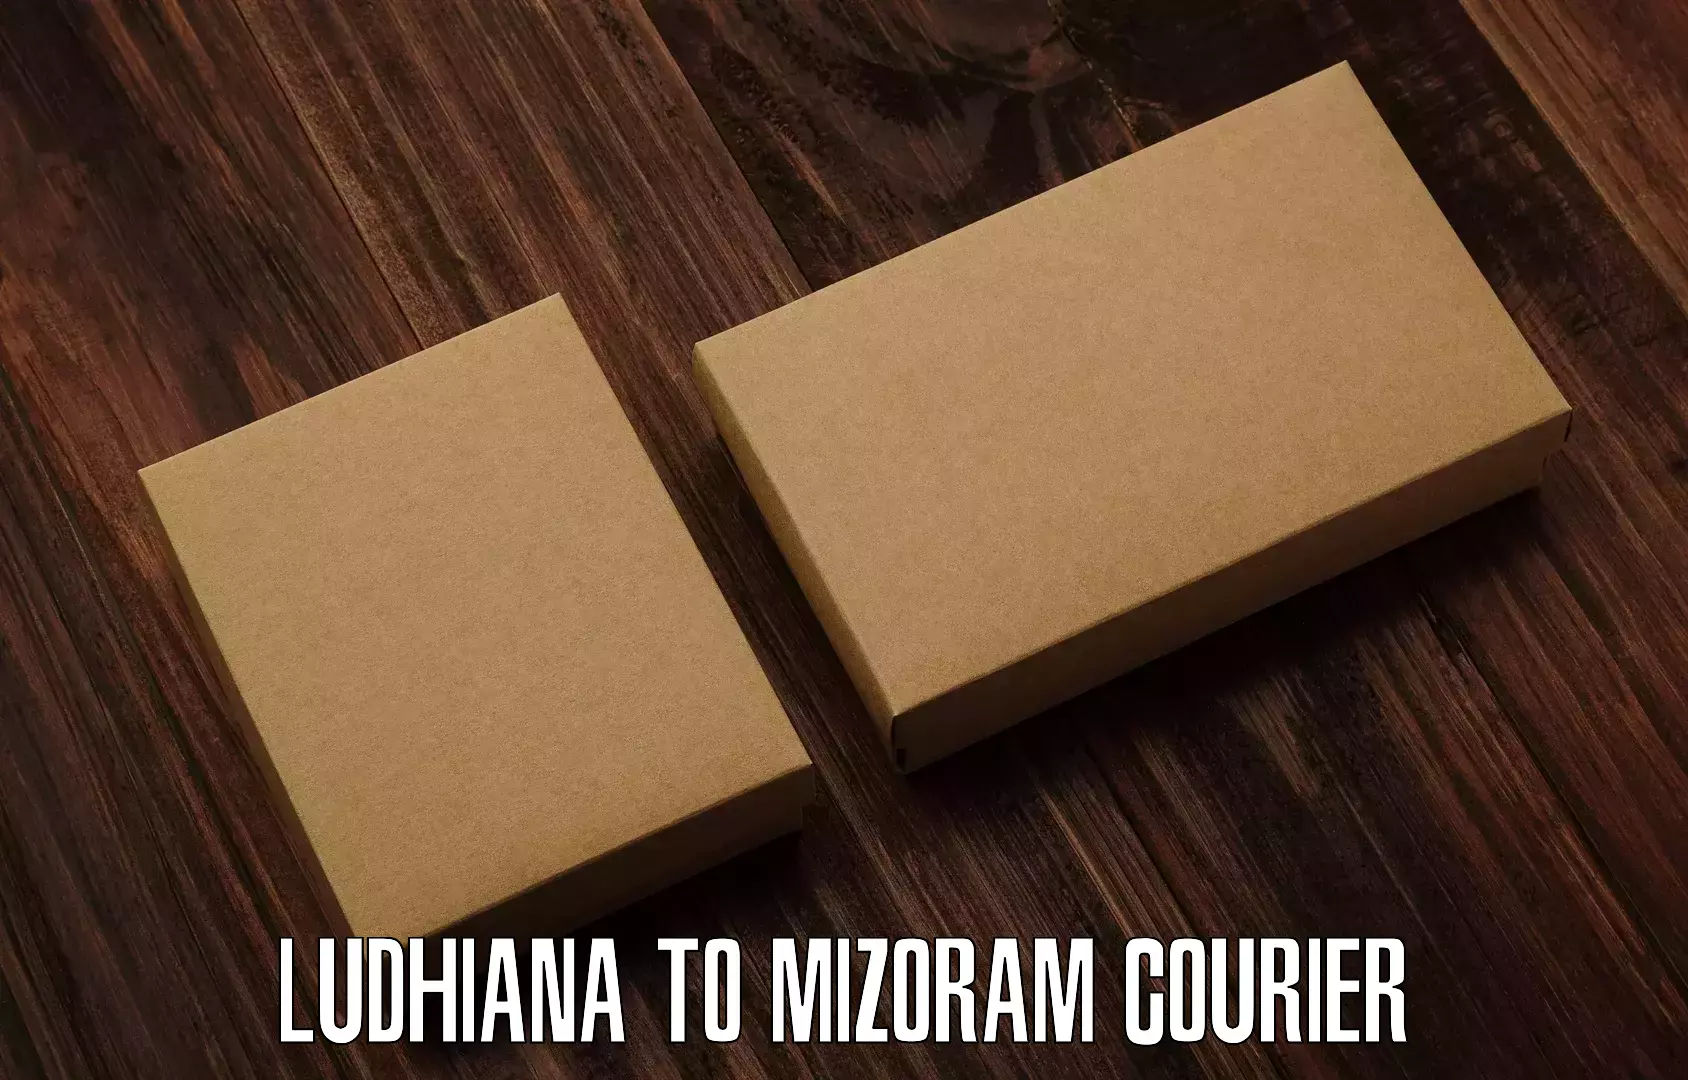 Cargo delivery service Ludhiana to Aizawl